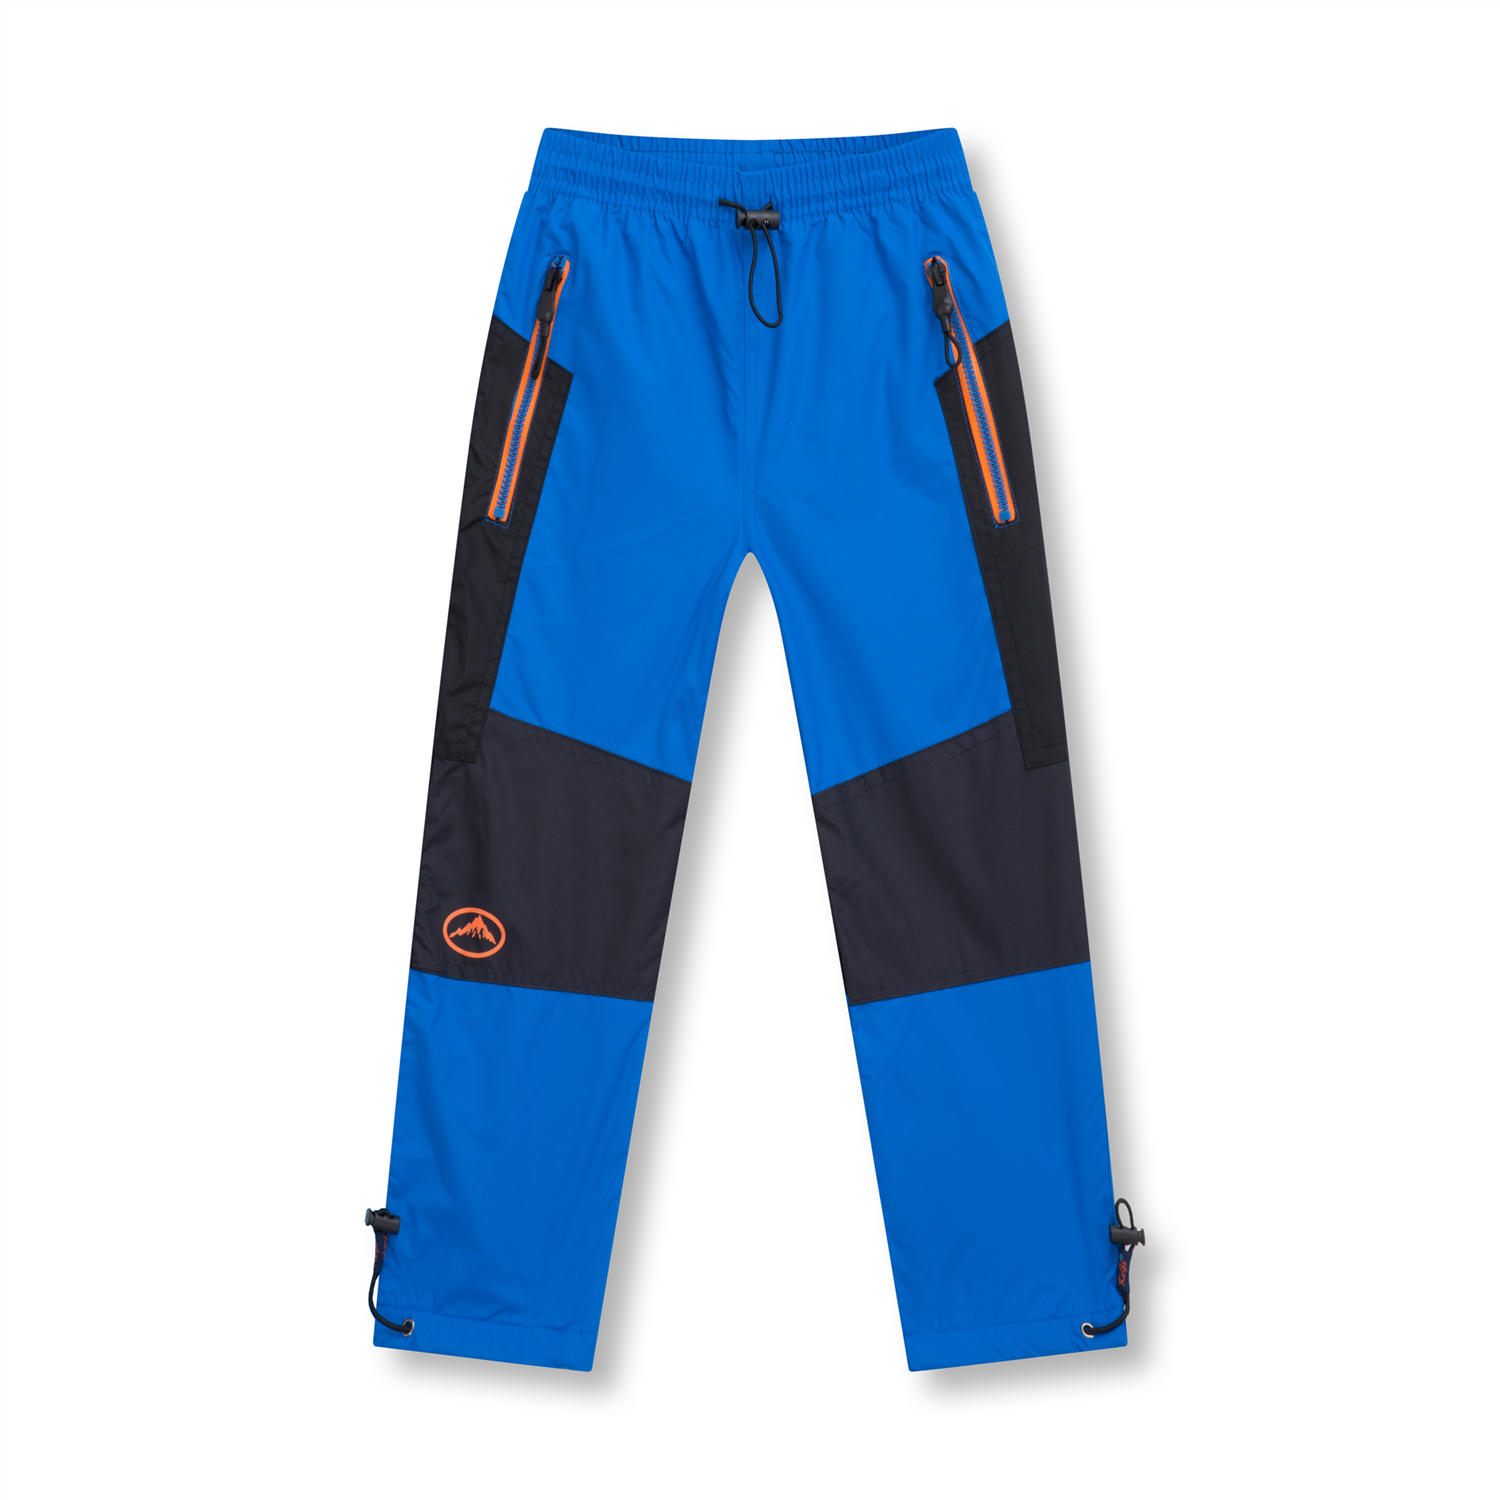 Chlapecké šusťákové kalhoty, zateplené - KUGO D911, modrá Barva: Modrá, Velikost: 98